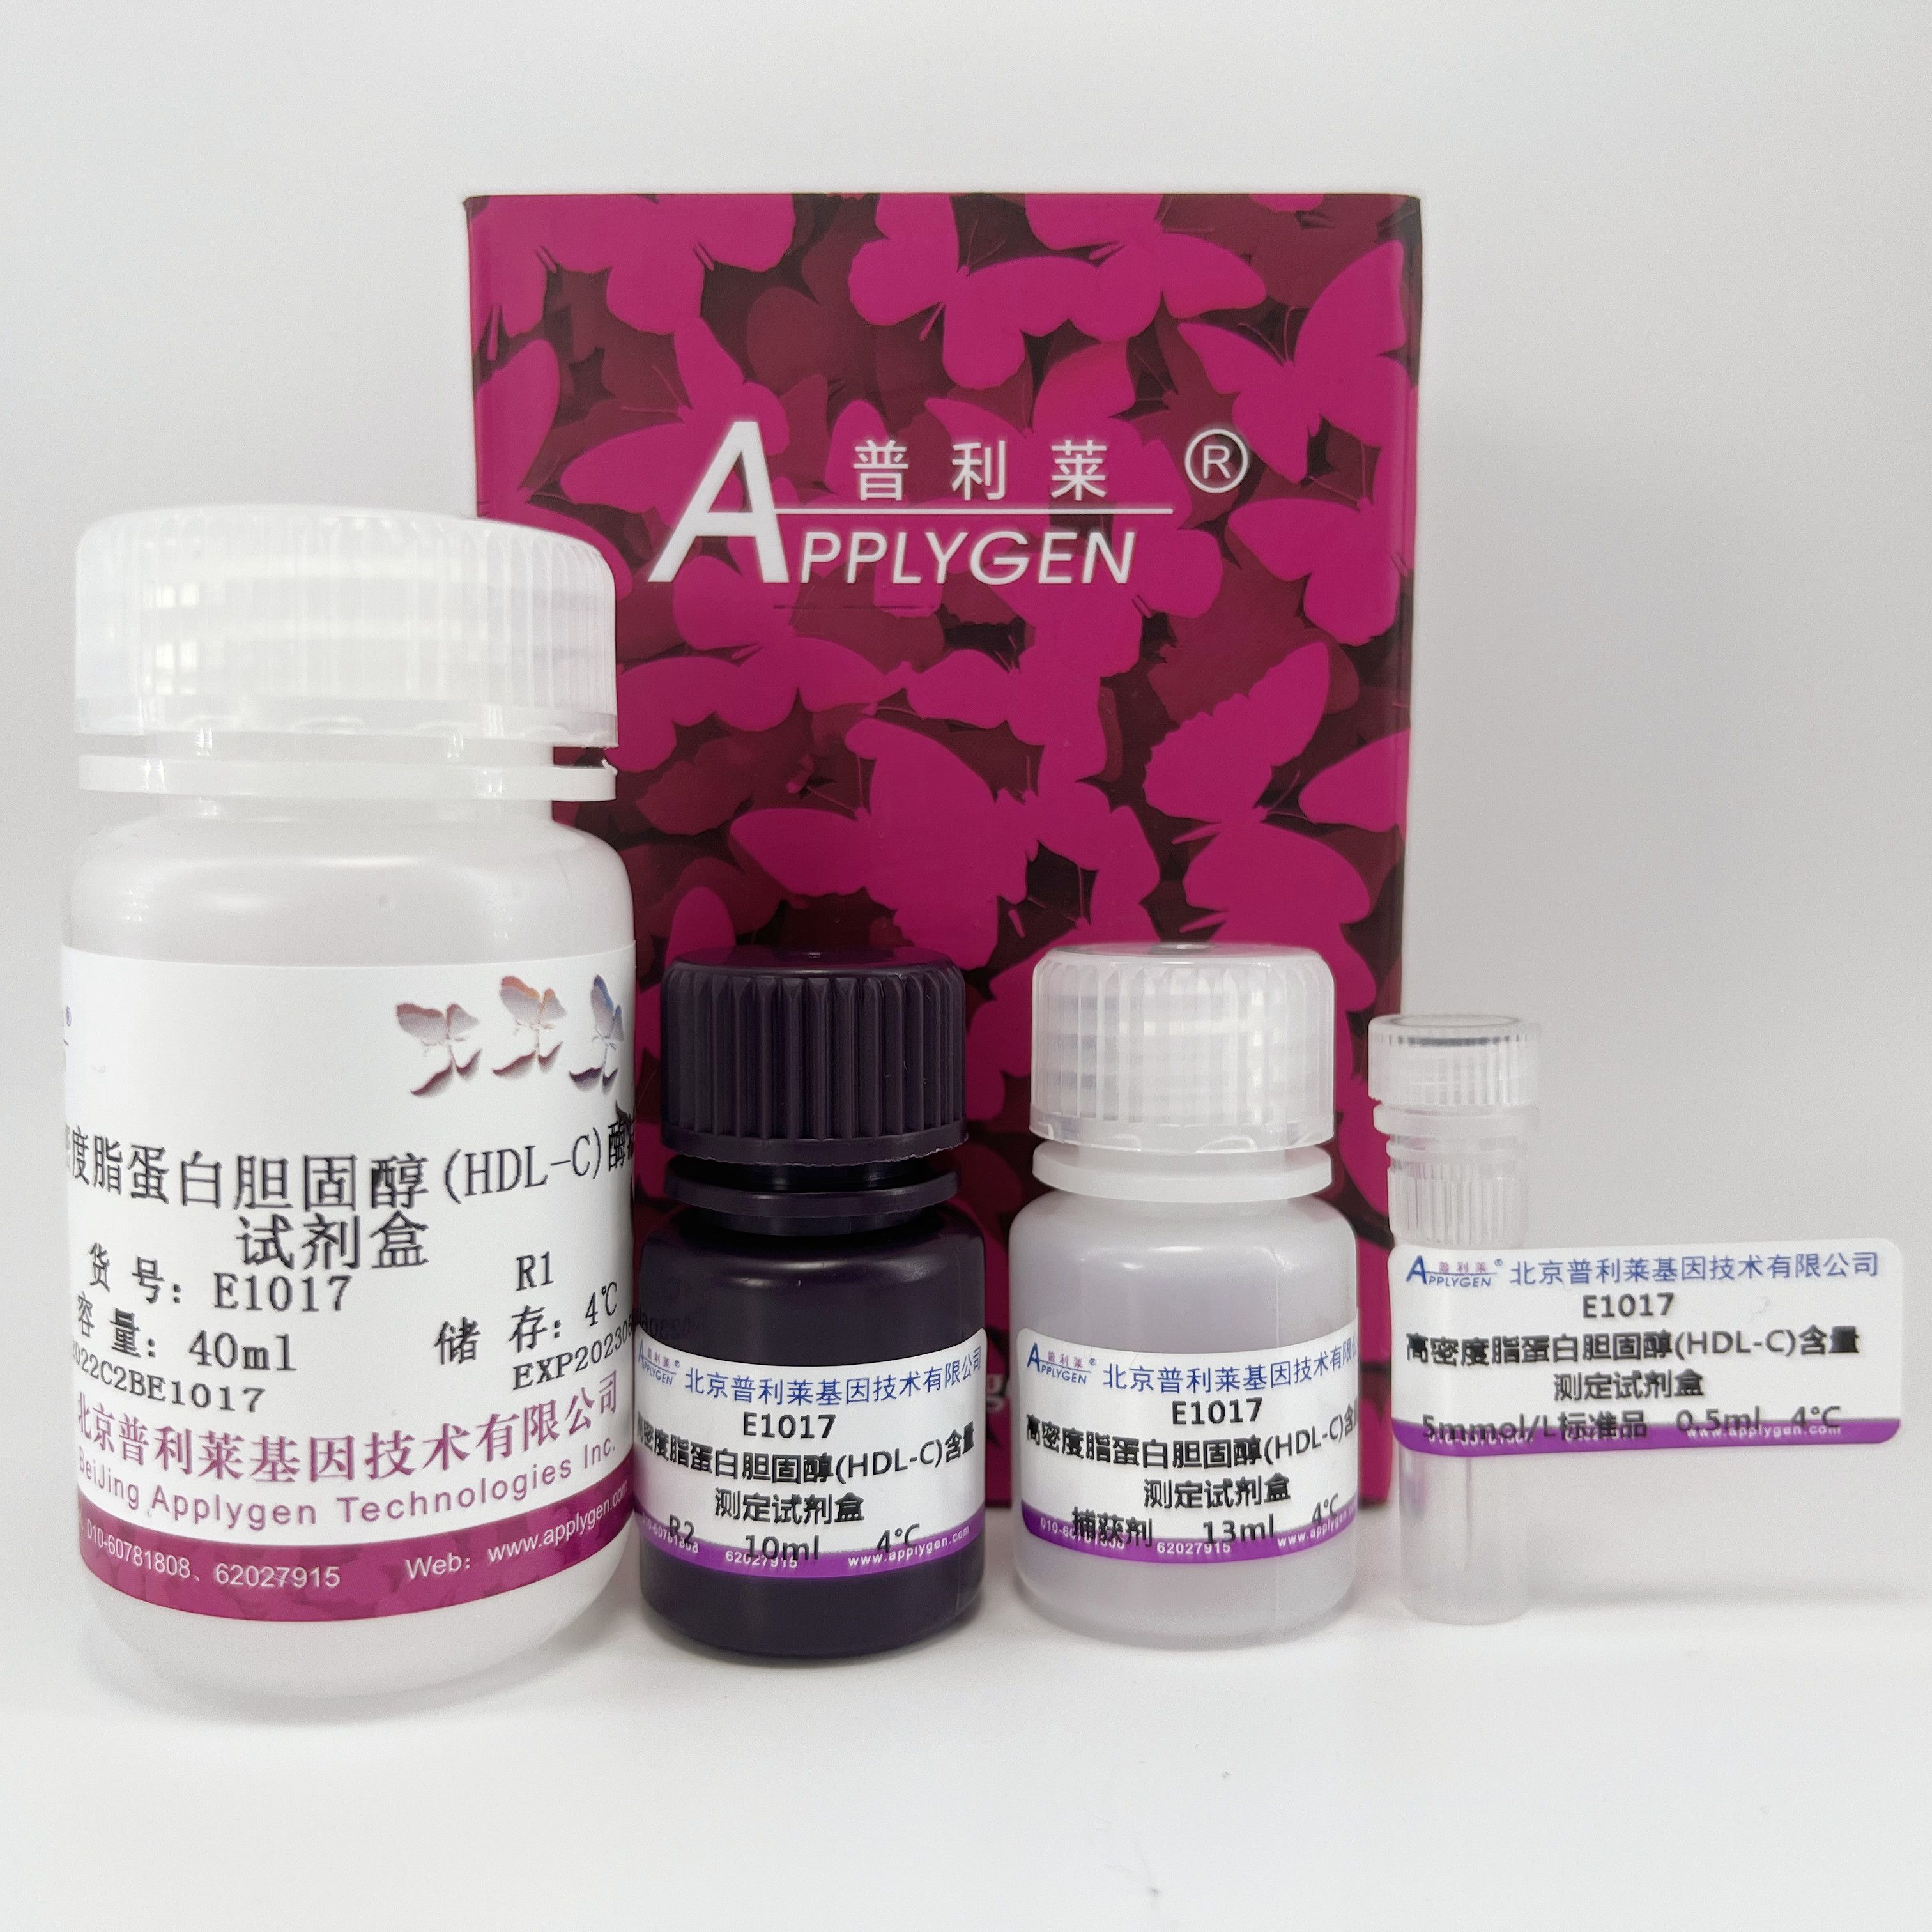 血液高密度脂蛋白胆固醇（HDL-C）含量酶法测定试剂盒     E1017   厂家直销，提供OEM定制服务，大包装更优惠 